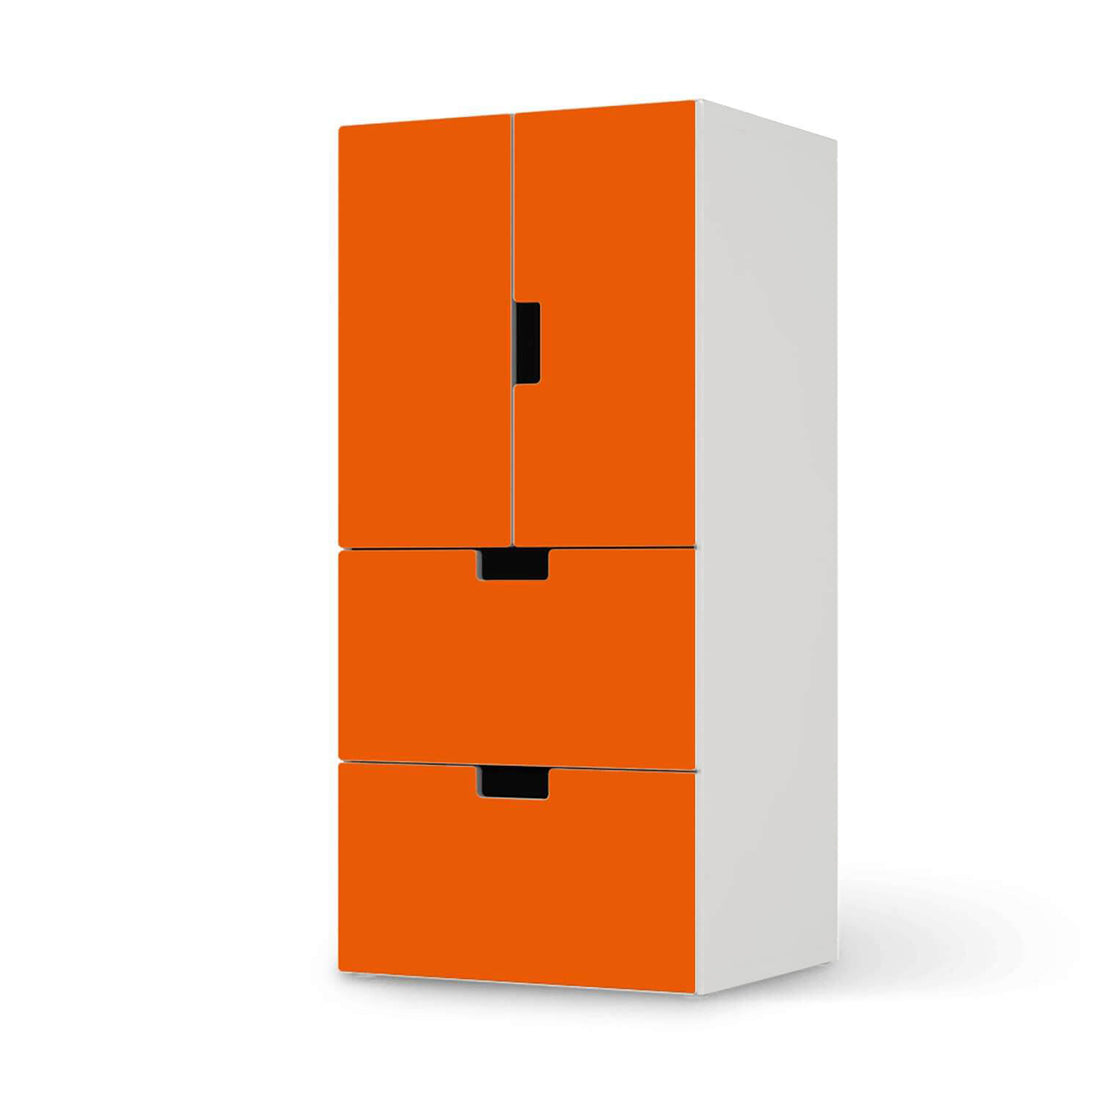 Möbelfolie Orange Dark - IKEA Stuva kombiniert - 2 Schubladen und 2 kleine Türen  - weiss